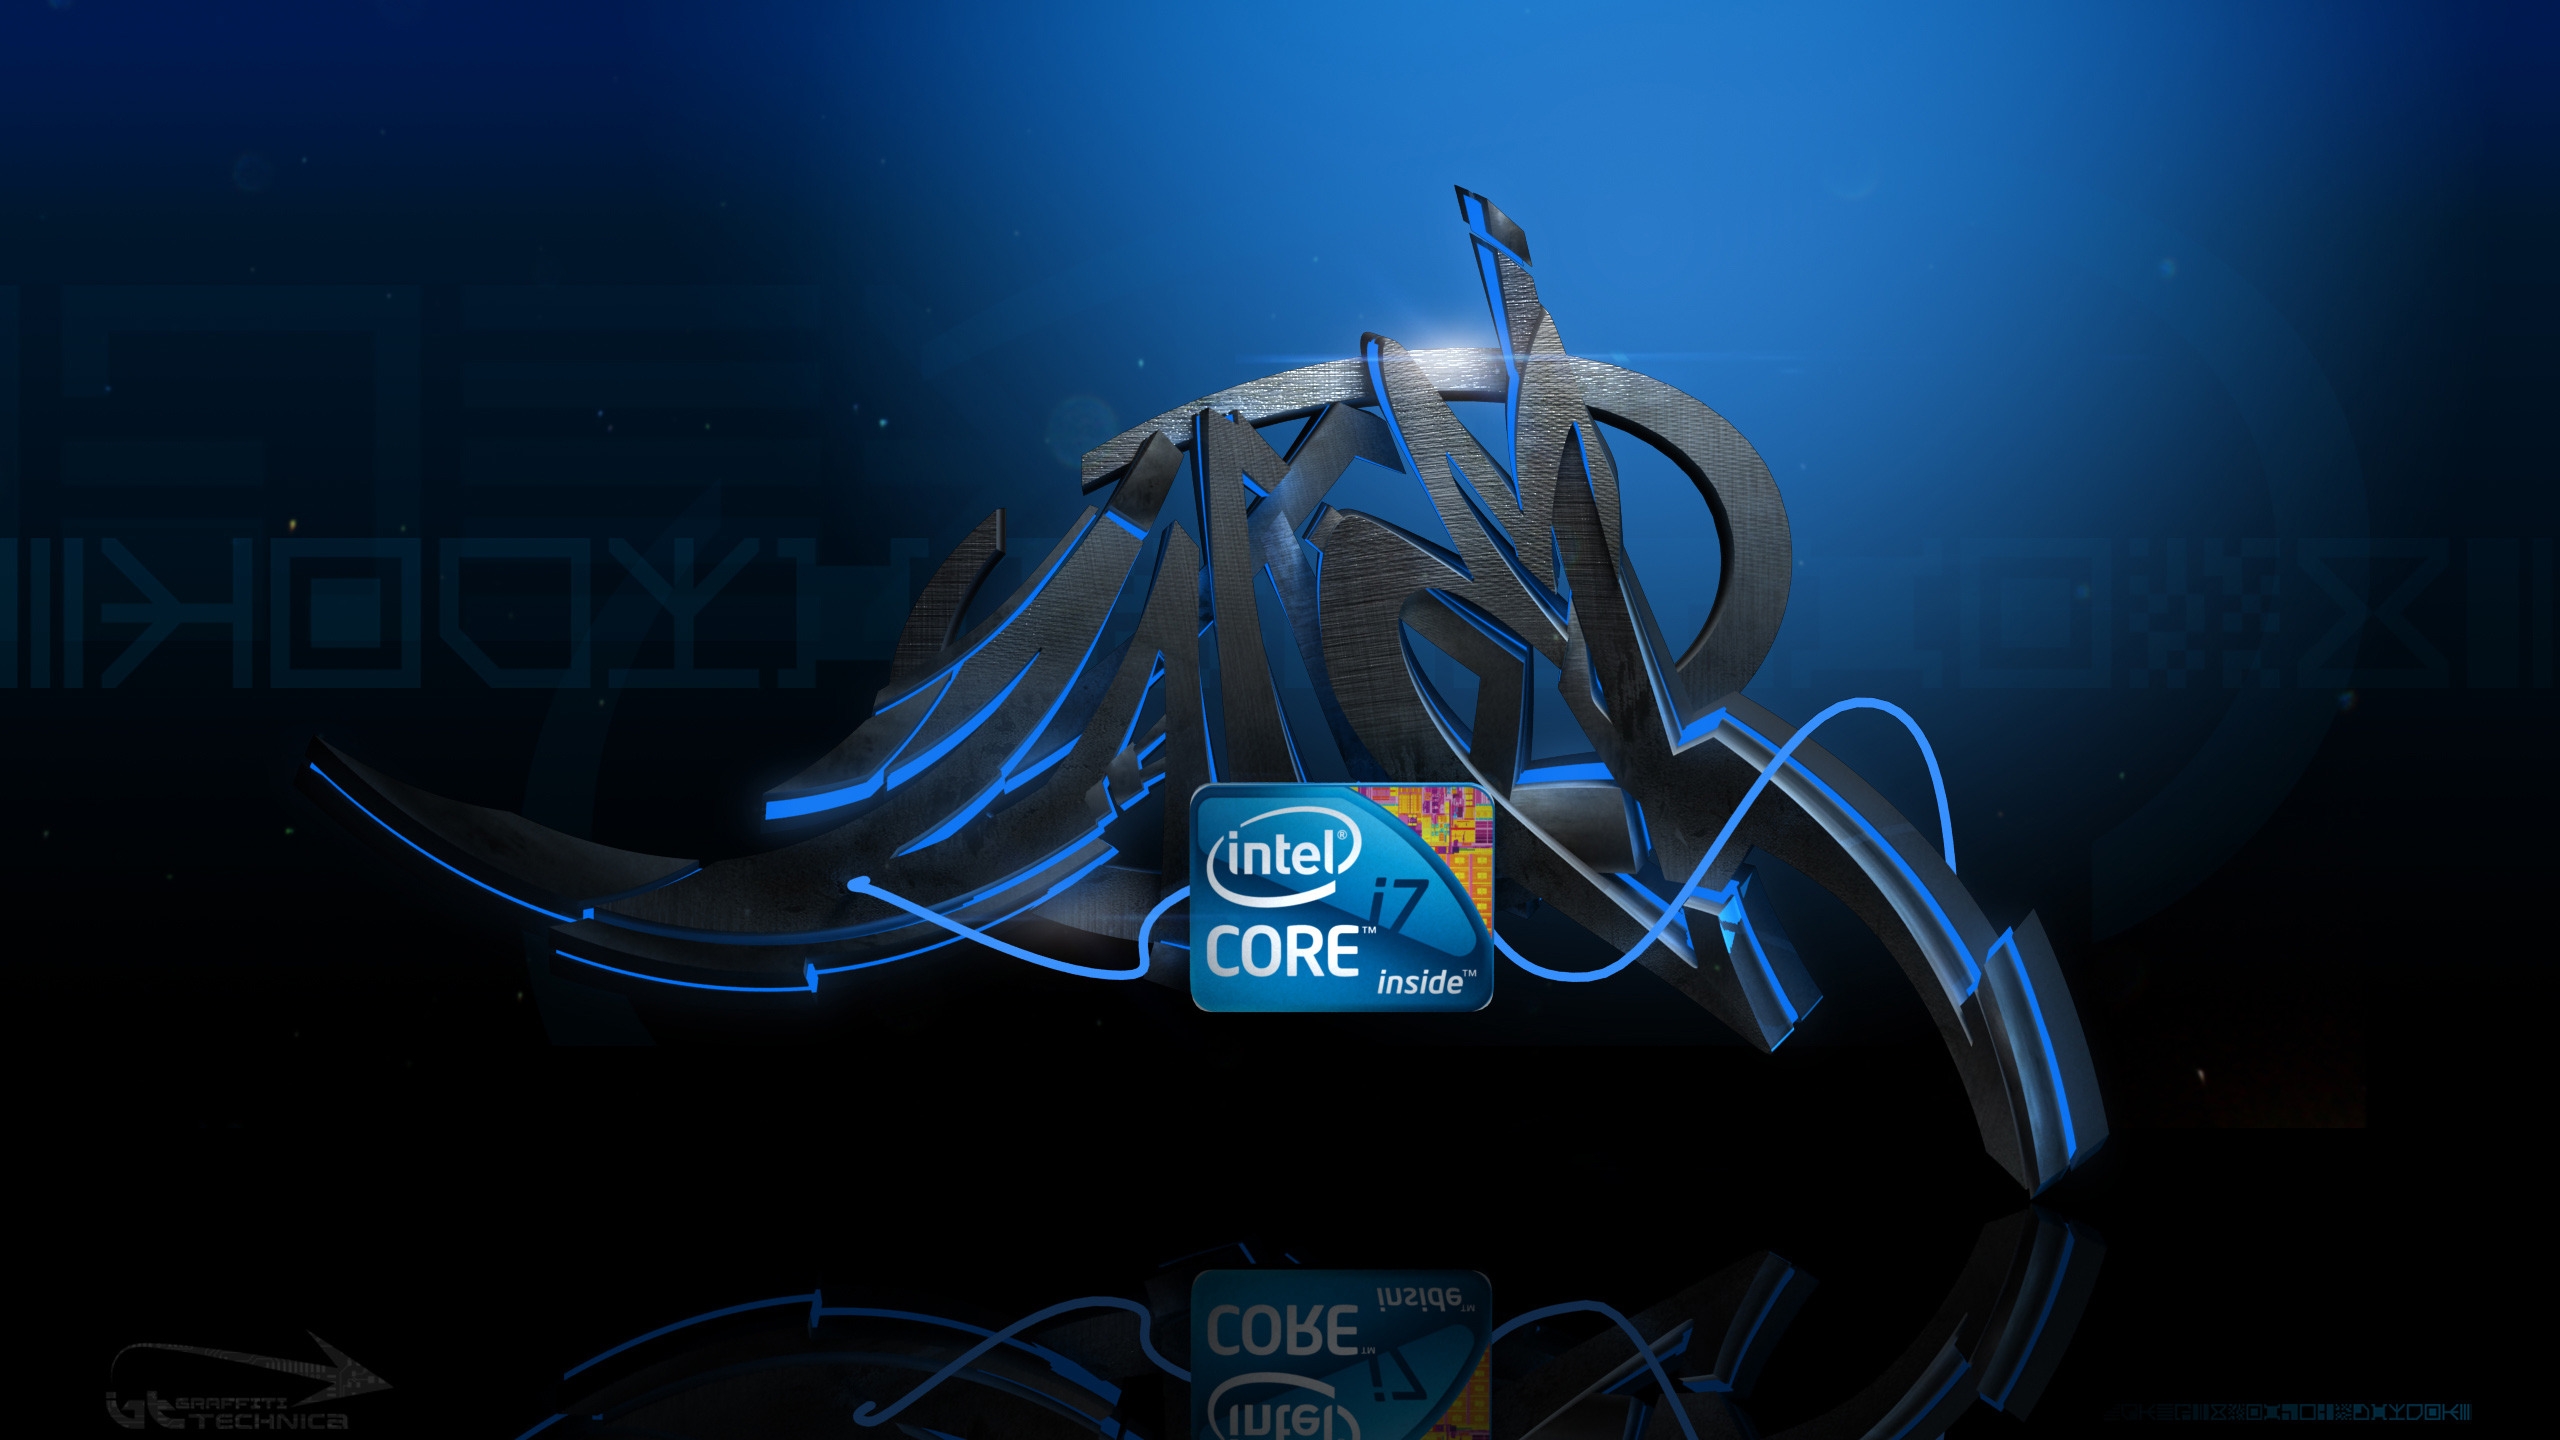 Intel i7 Graffiti for 2560x1440 HDTV resolution